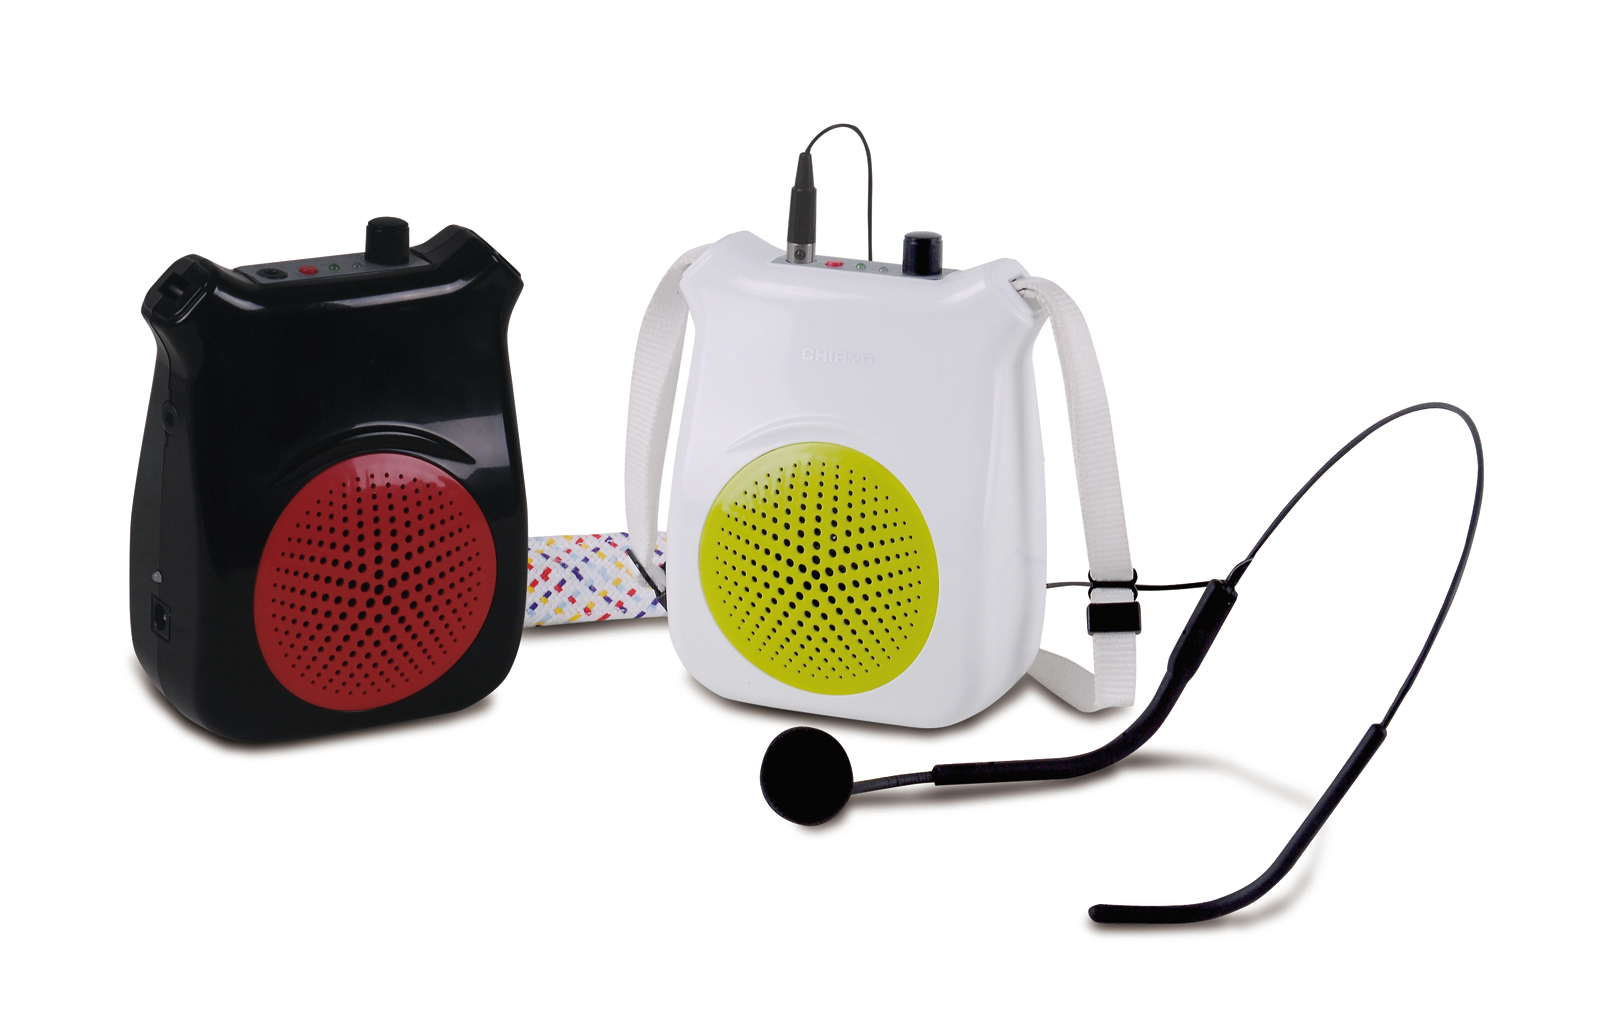 Portable smart voice amplifier